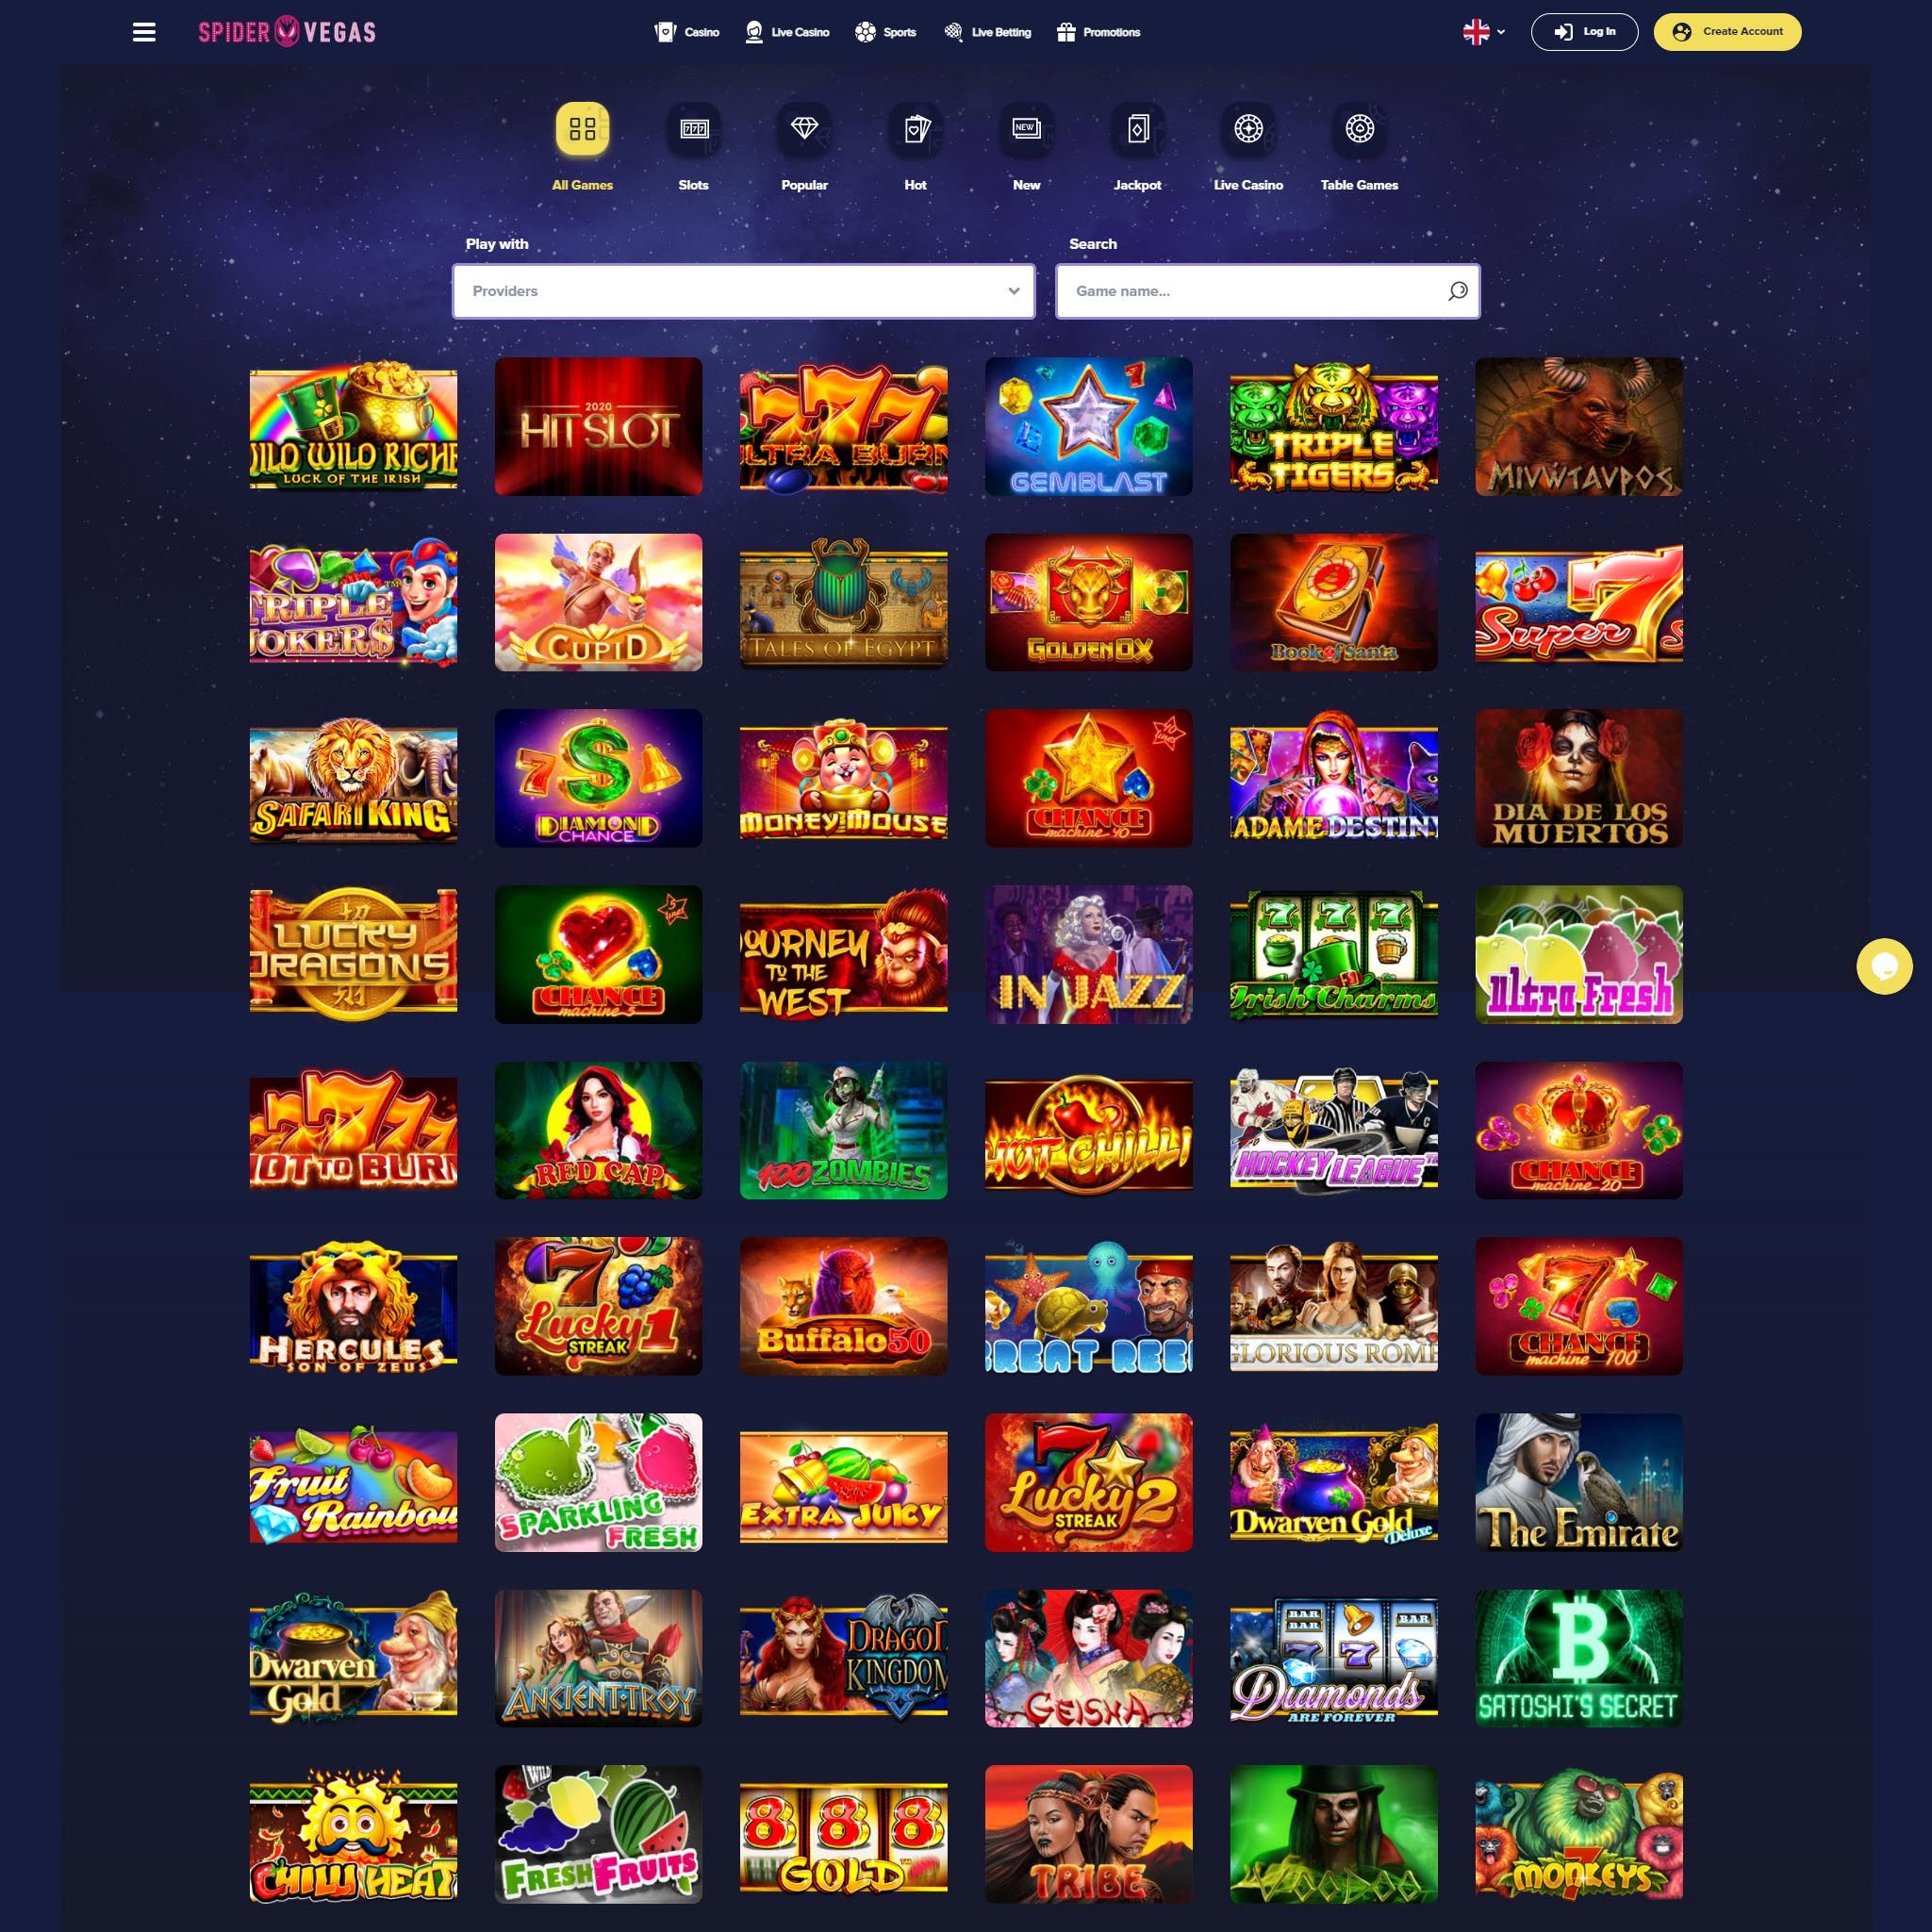 Spider Vegas Casino full games catalogue